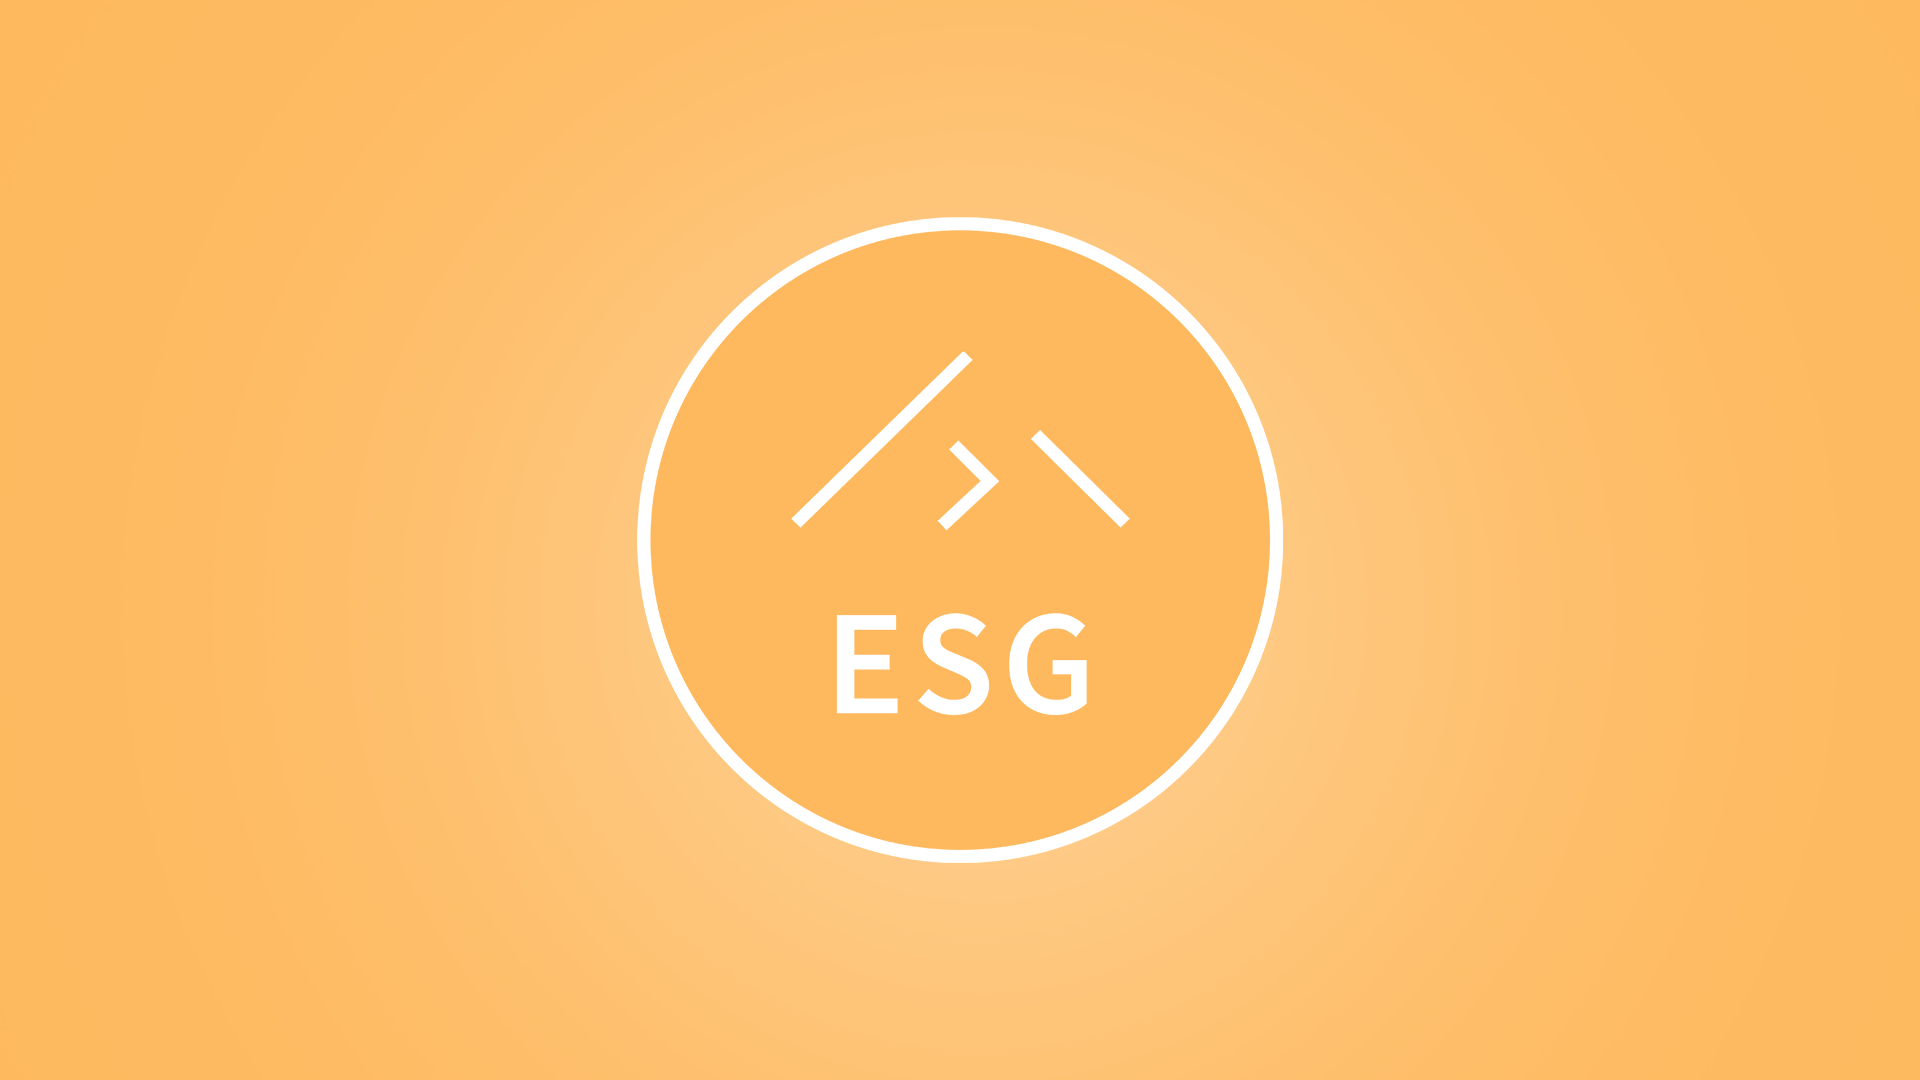 ESG with logo yellow